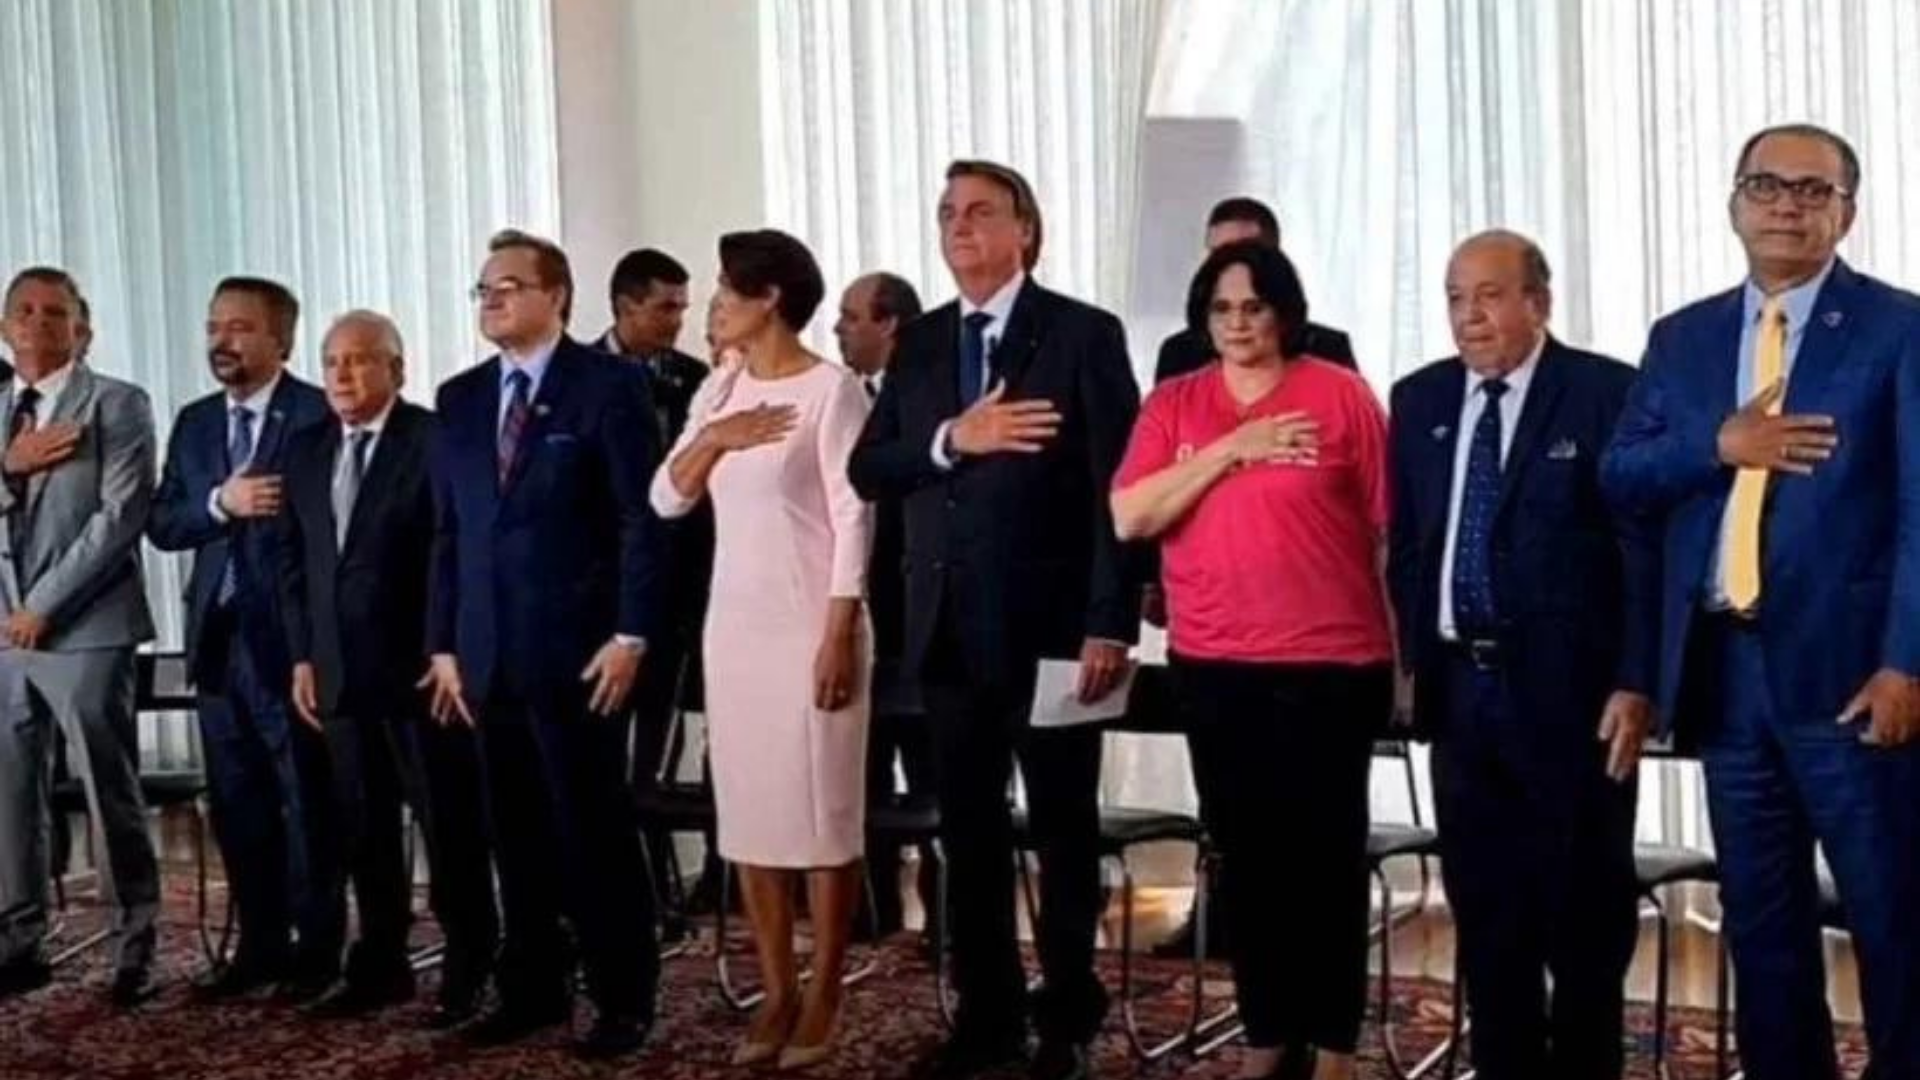 Desesperado, Bolsonaro quer "entregar o bastão da presidência". Foto de salão com o presidente, a esposa, ministros e convidados.